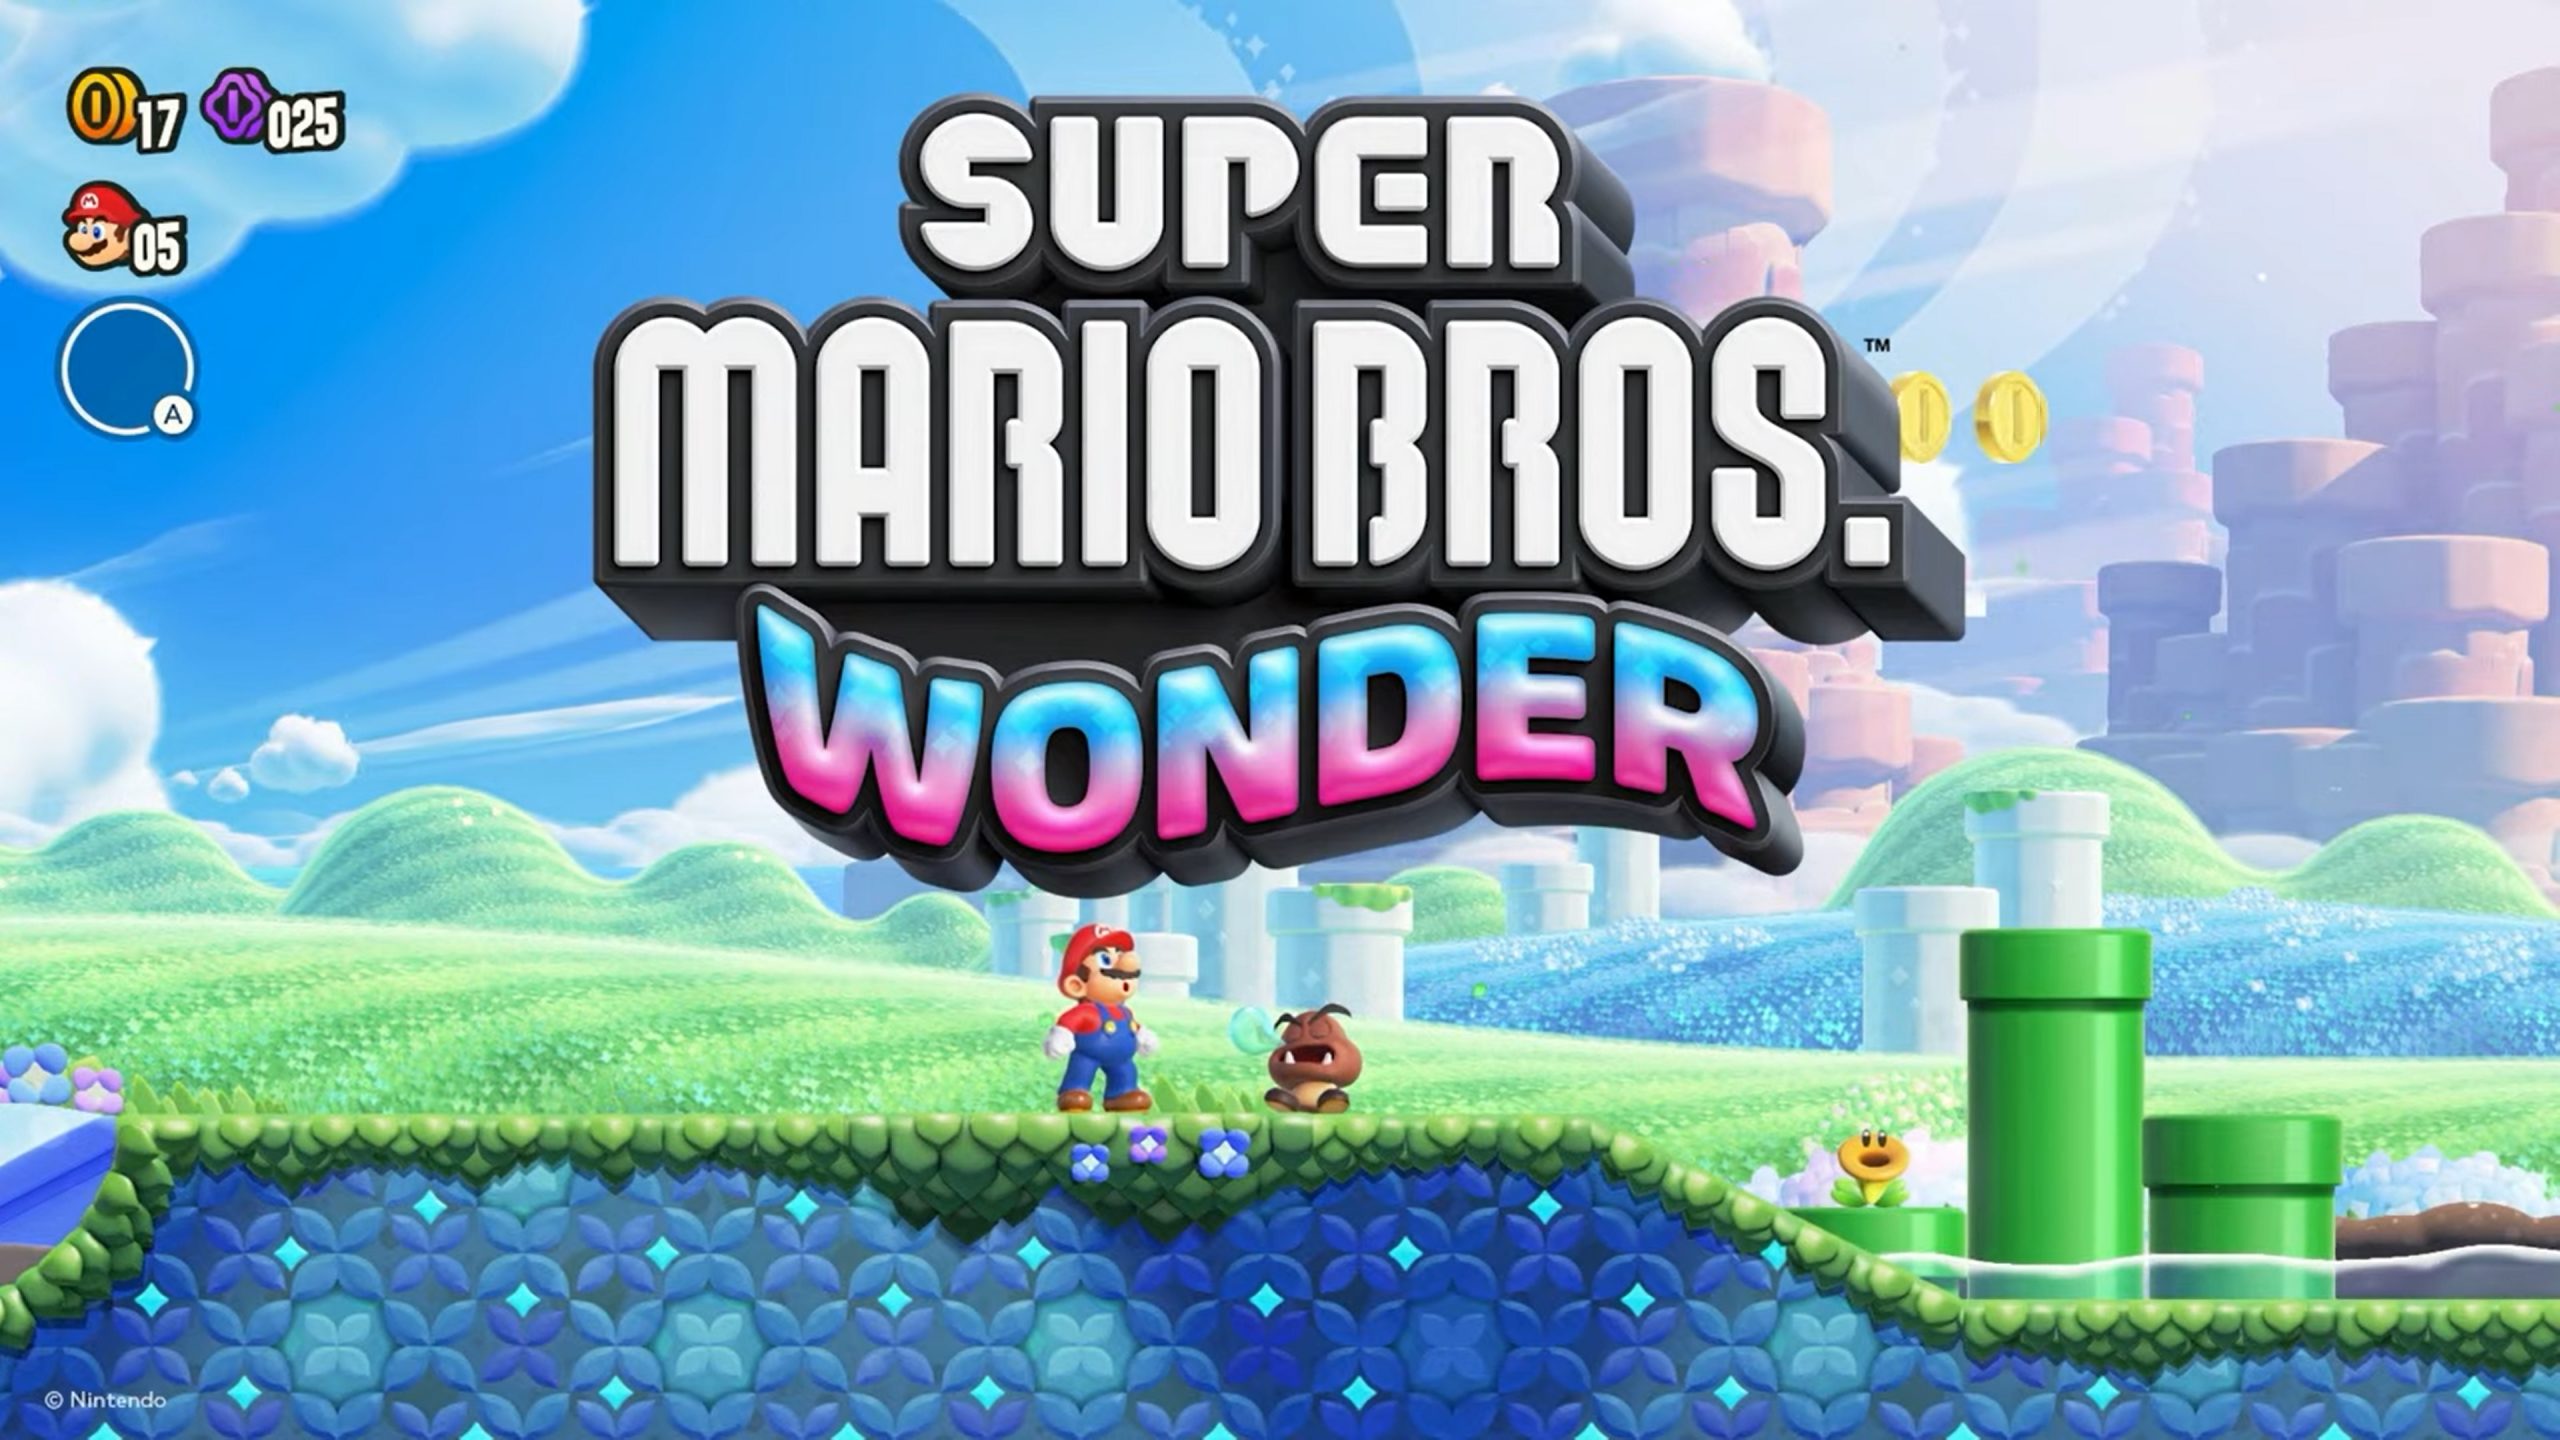 Nintendo opublikowało kilka zrzutów ekranu z nowej platformówki Super Mario Bros Wonder